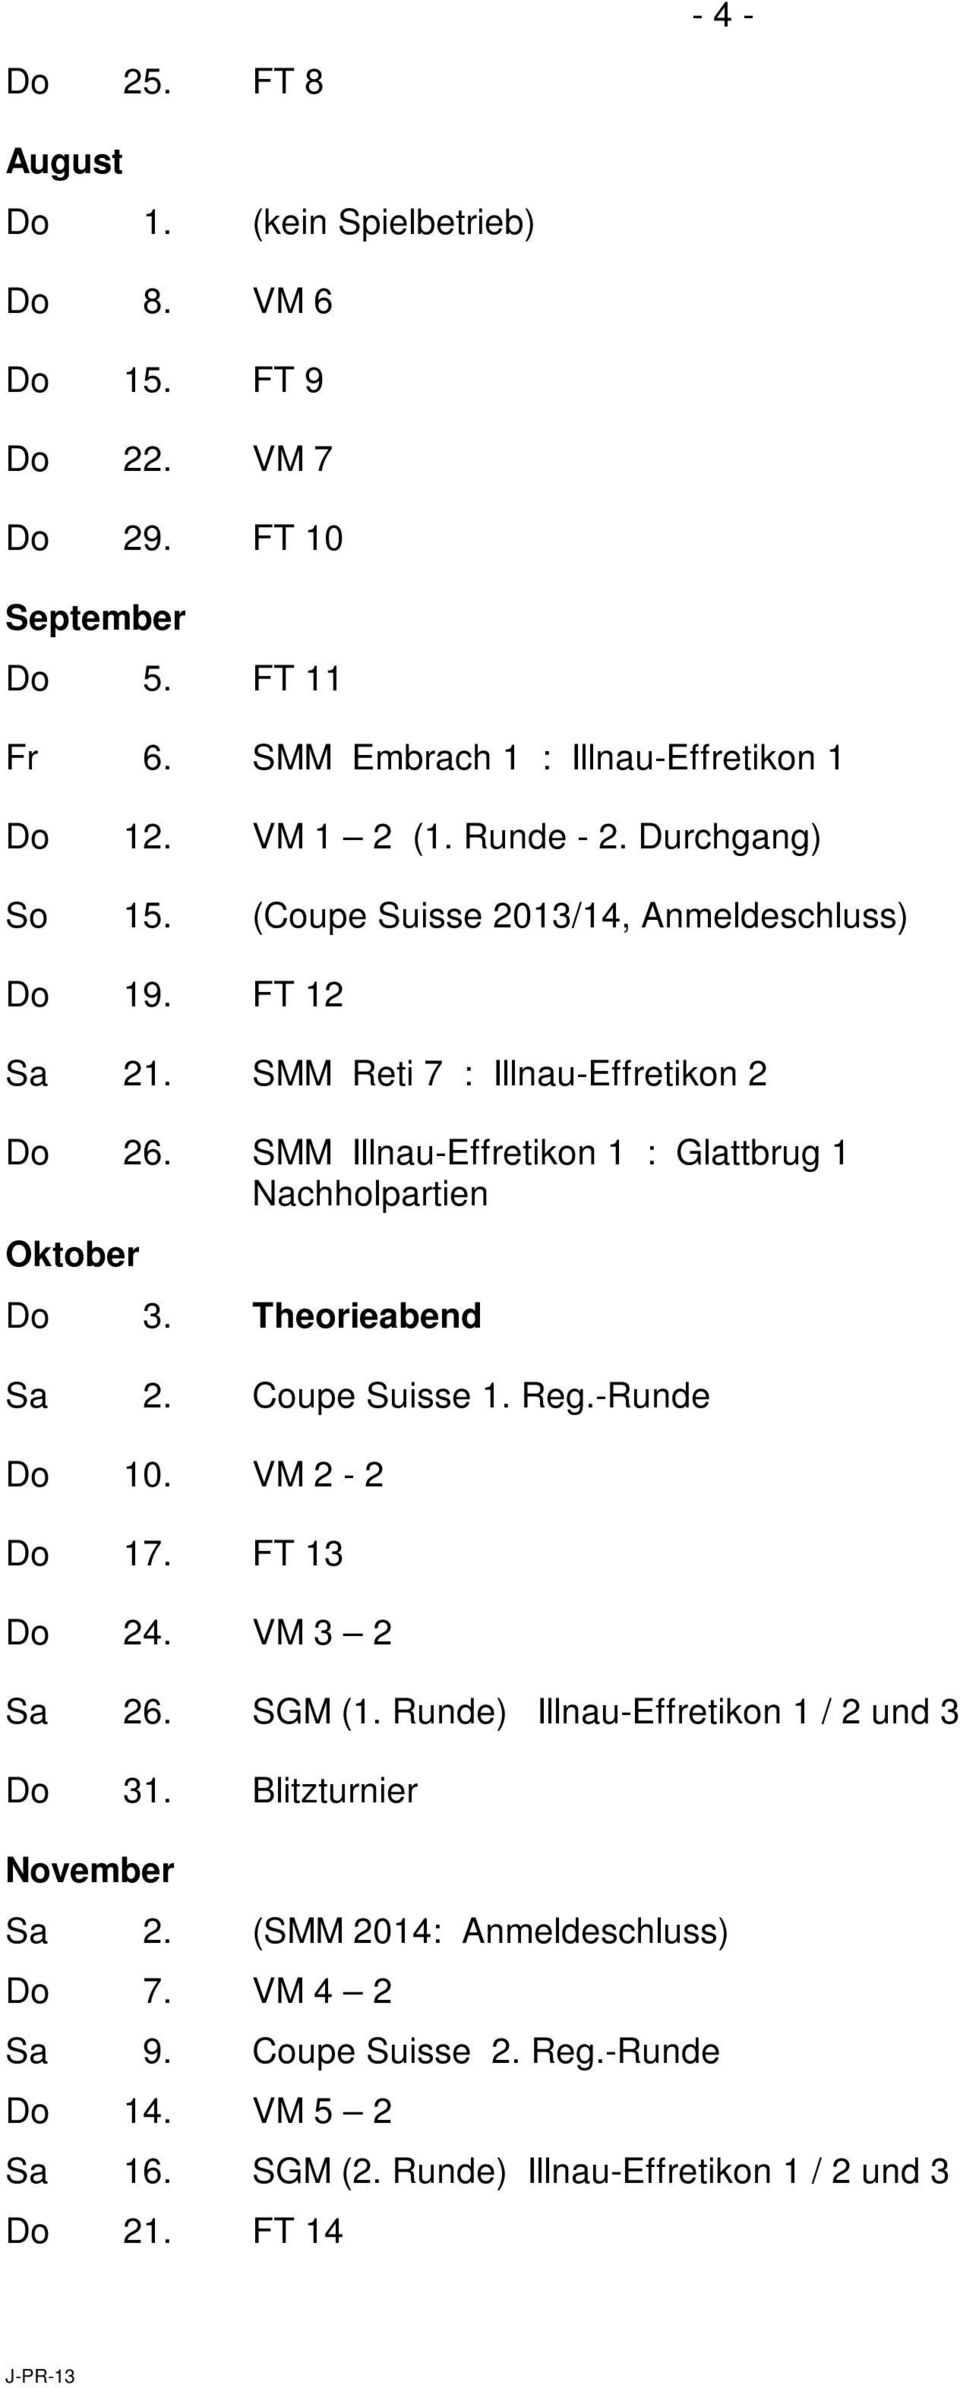 SMM Illnau-Effretikon 1 : Glattbrug 1 Nachholpartien Oktober Do 3. Theorieabend Sa 2. Coupe Suisse 1. Reg.-Runde Do 10. VM 2-2 Do 17. FT 13 Do 24. VM 3 2 Sa 26. SGM (1.